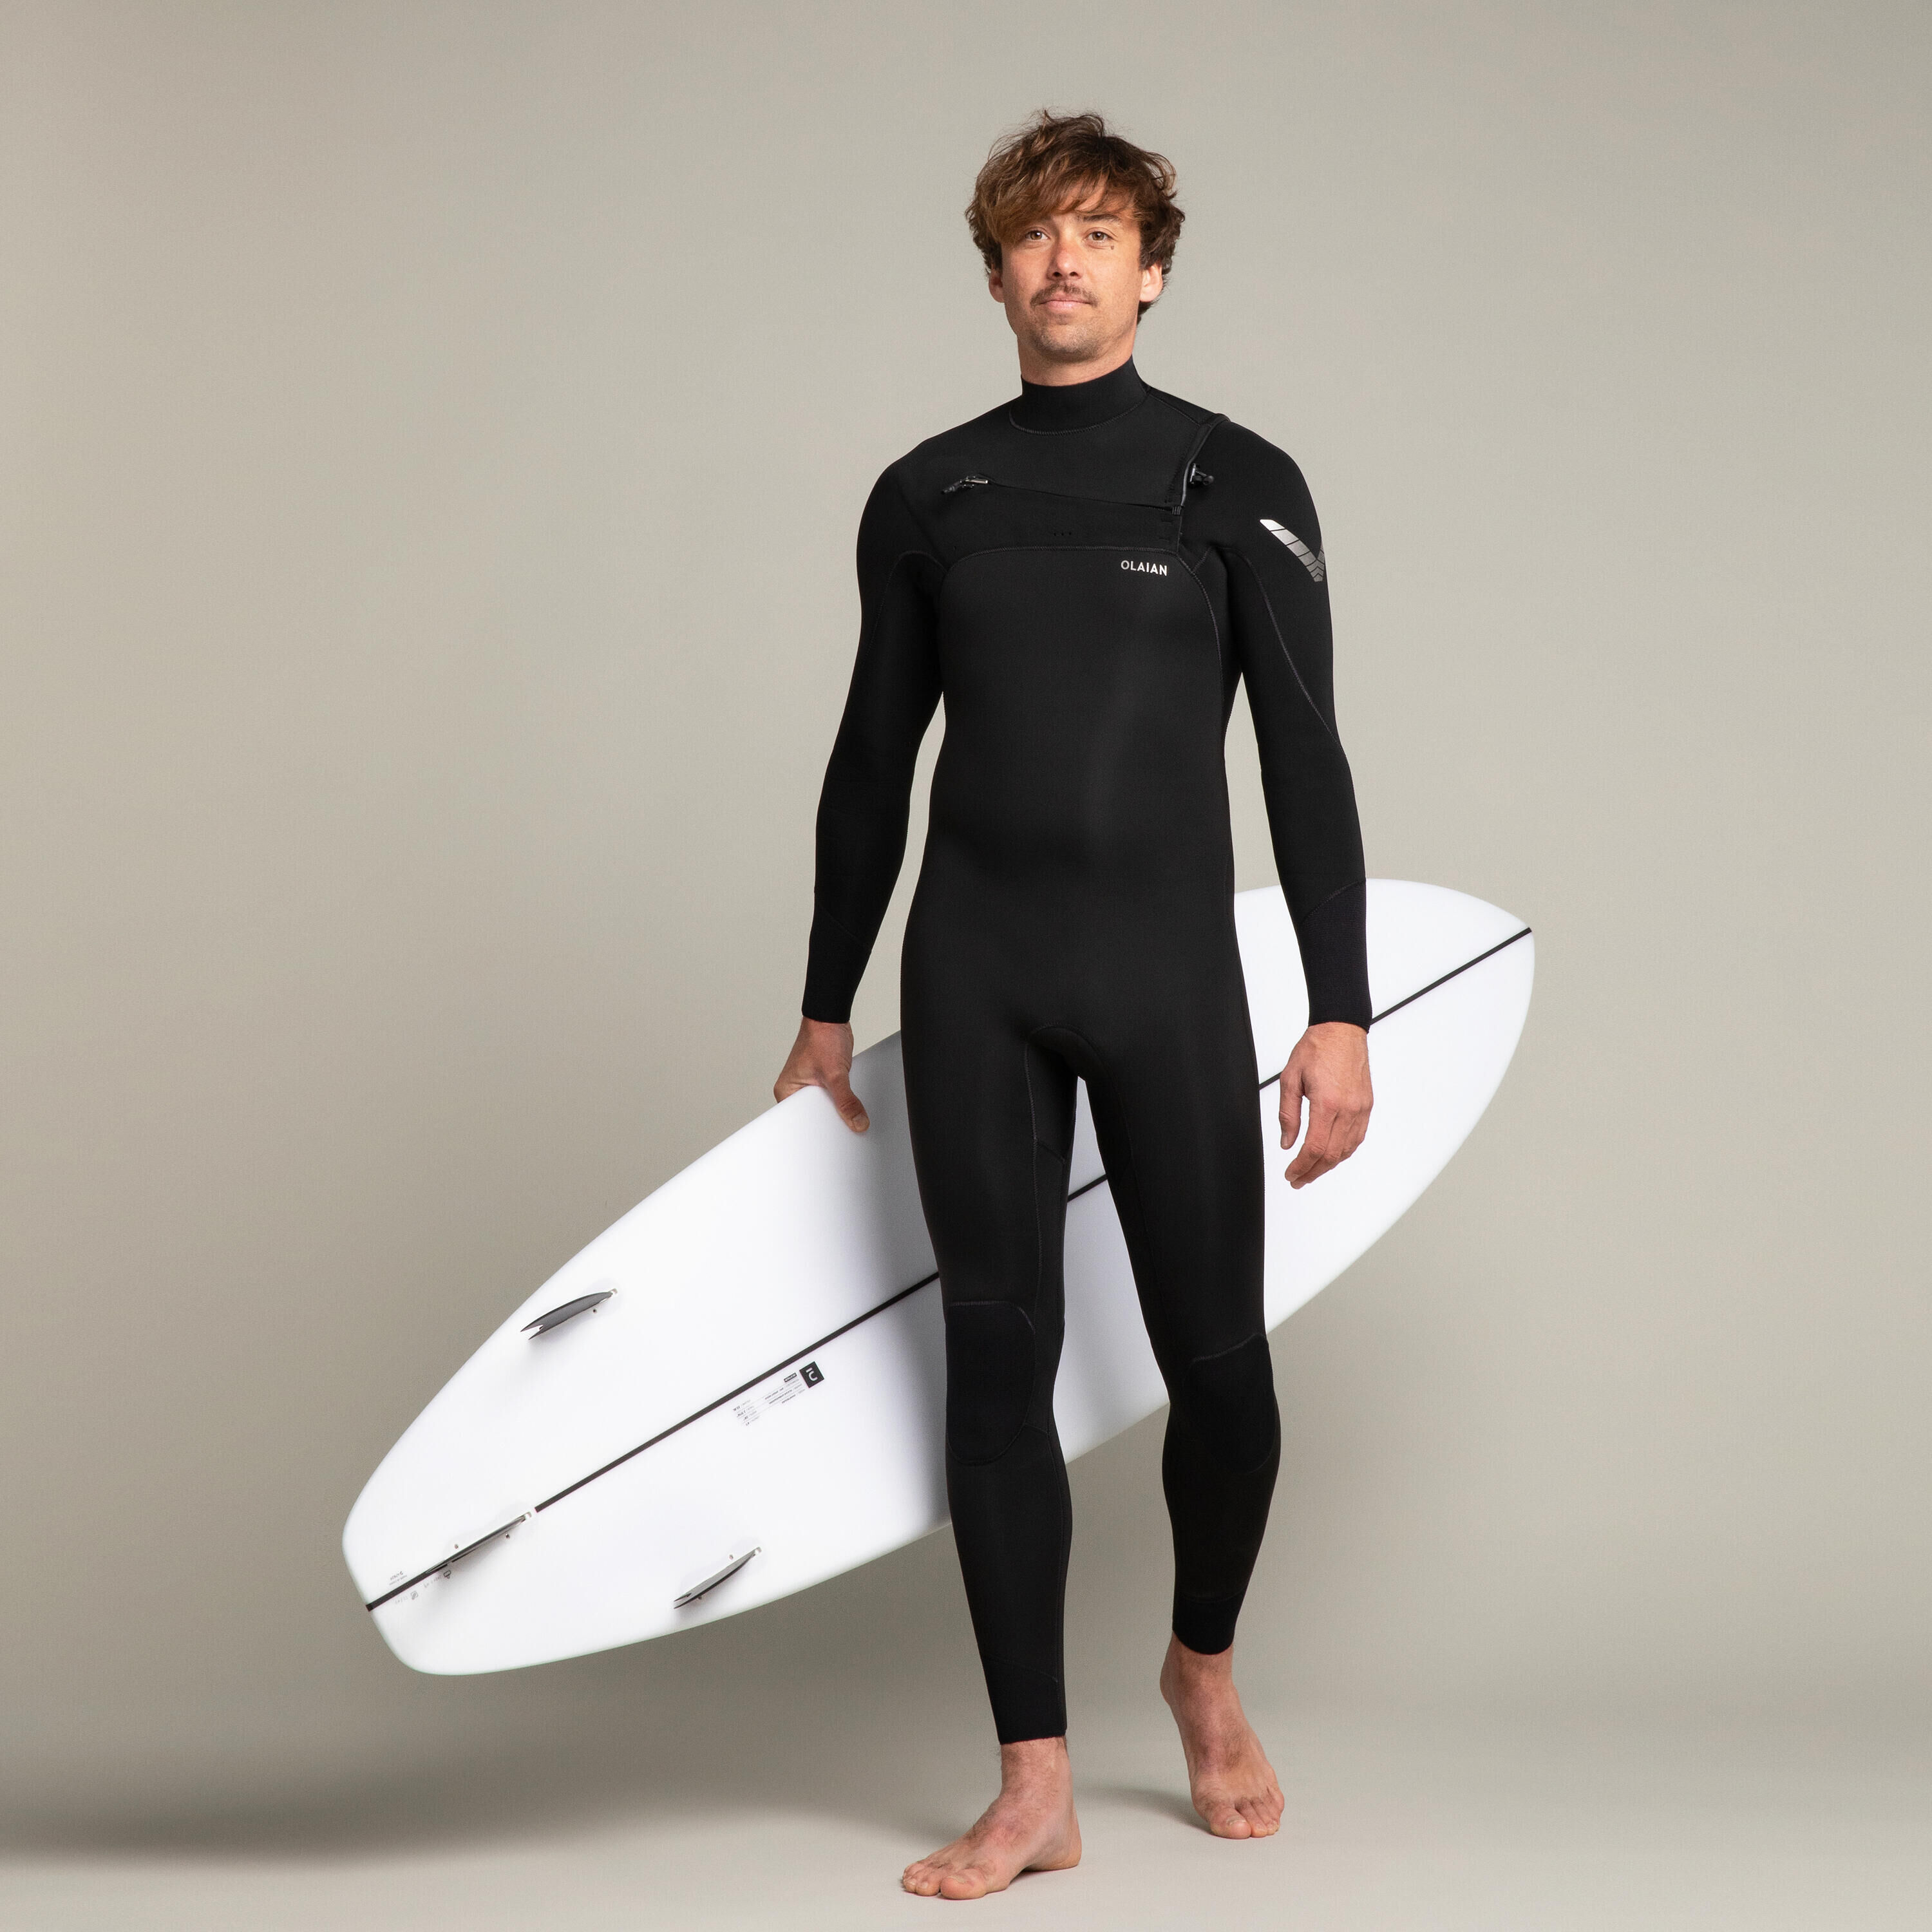 OLAIAN Men's surfing 4/3 mm neoprene wetsuit - 900 black